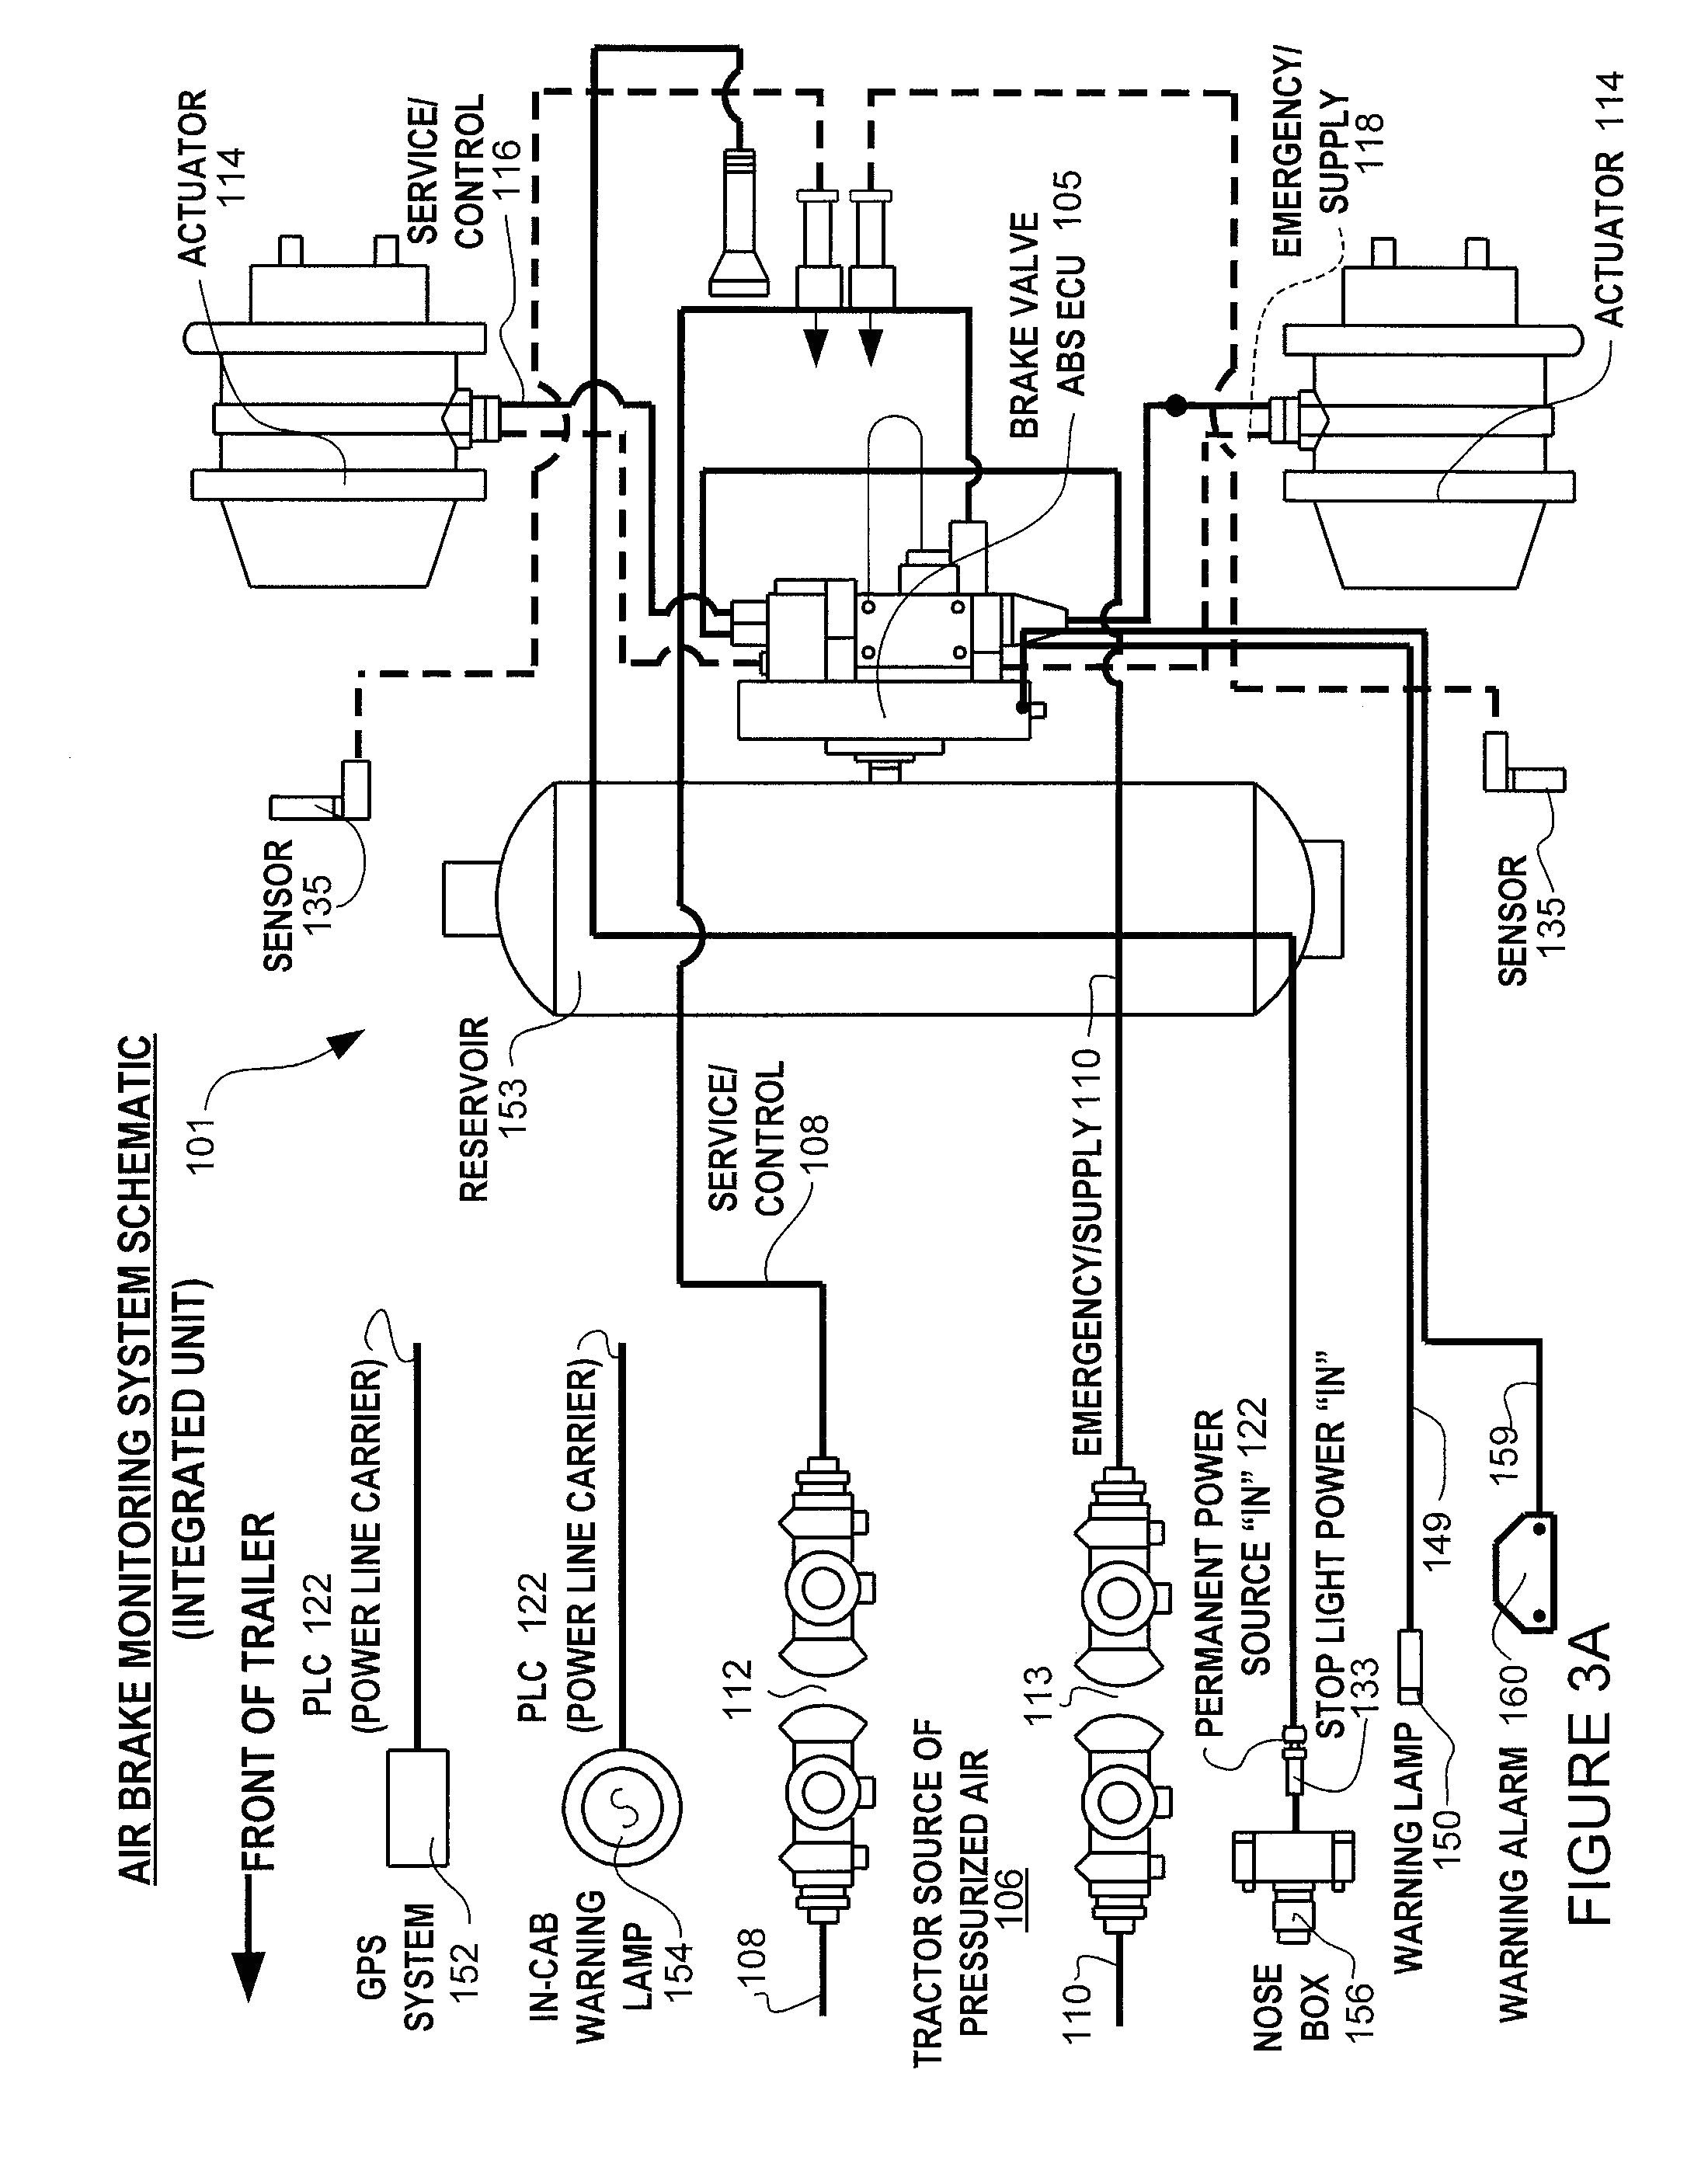 electrical wiring diagrams hvac 205706 wiring diagram user electrical wiring diagrams hvac 205706 source